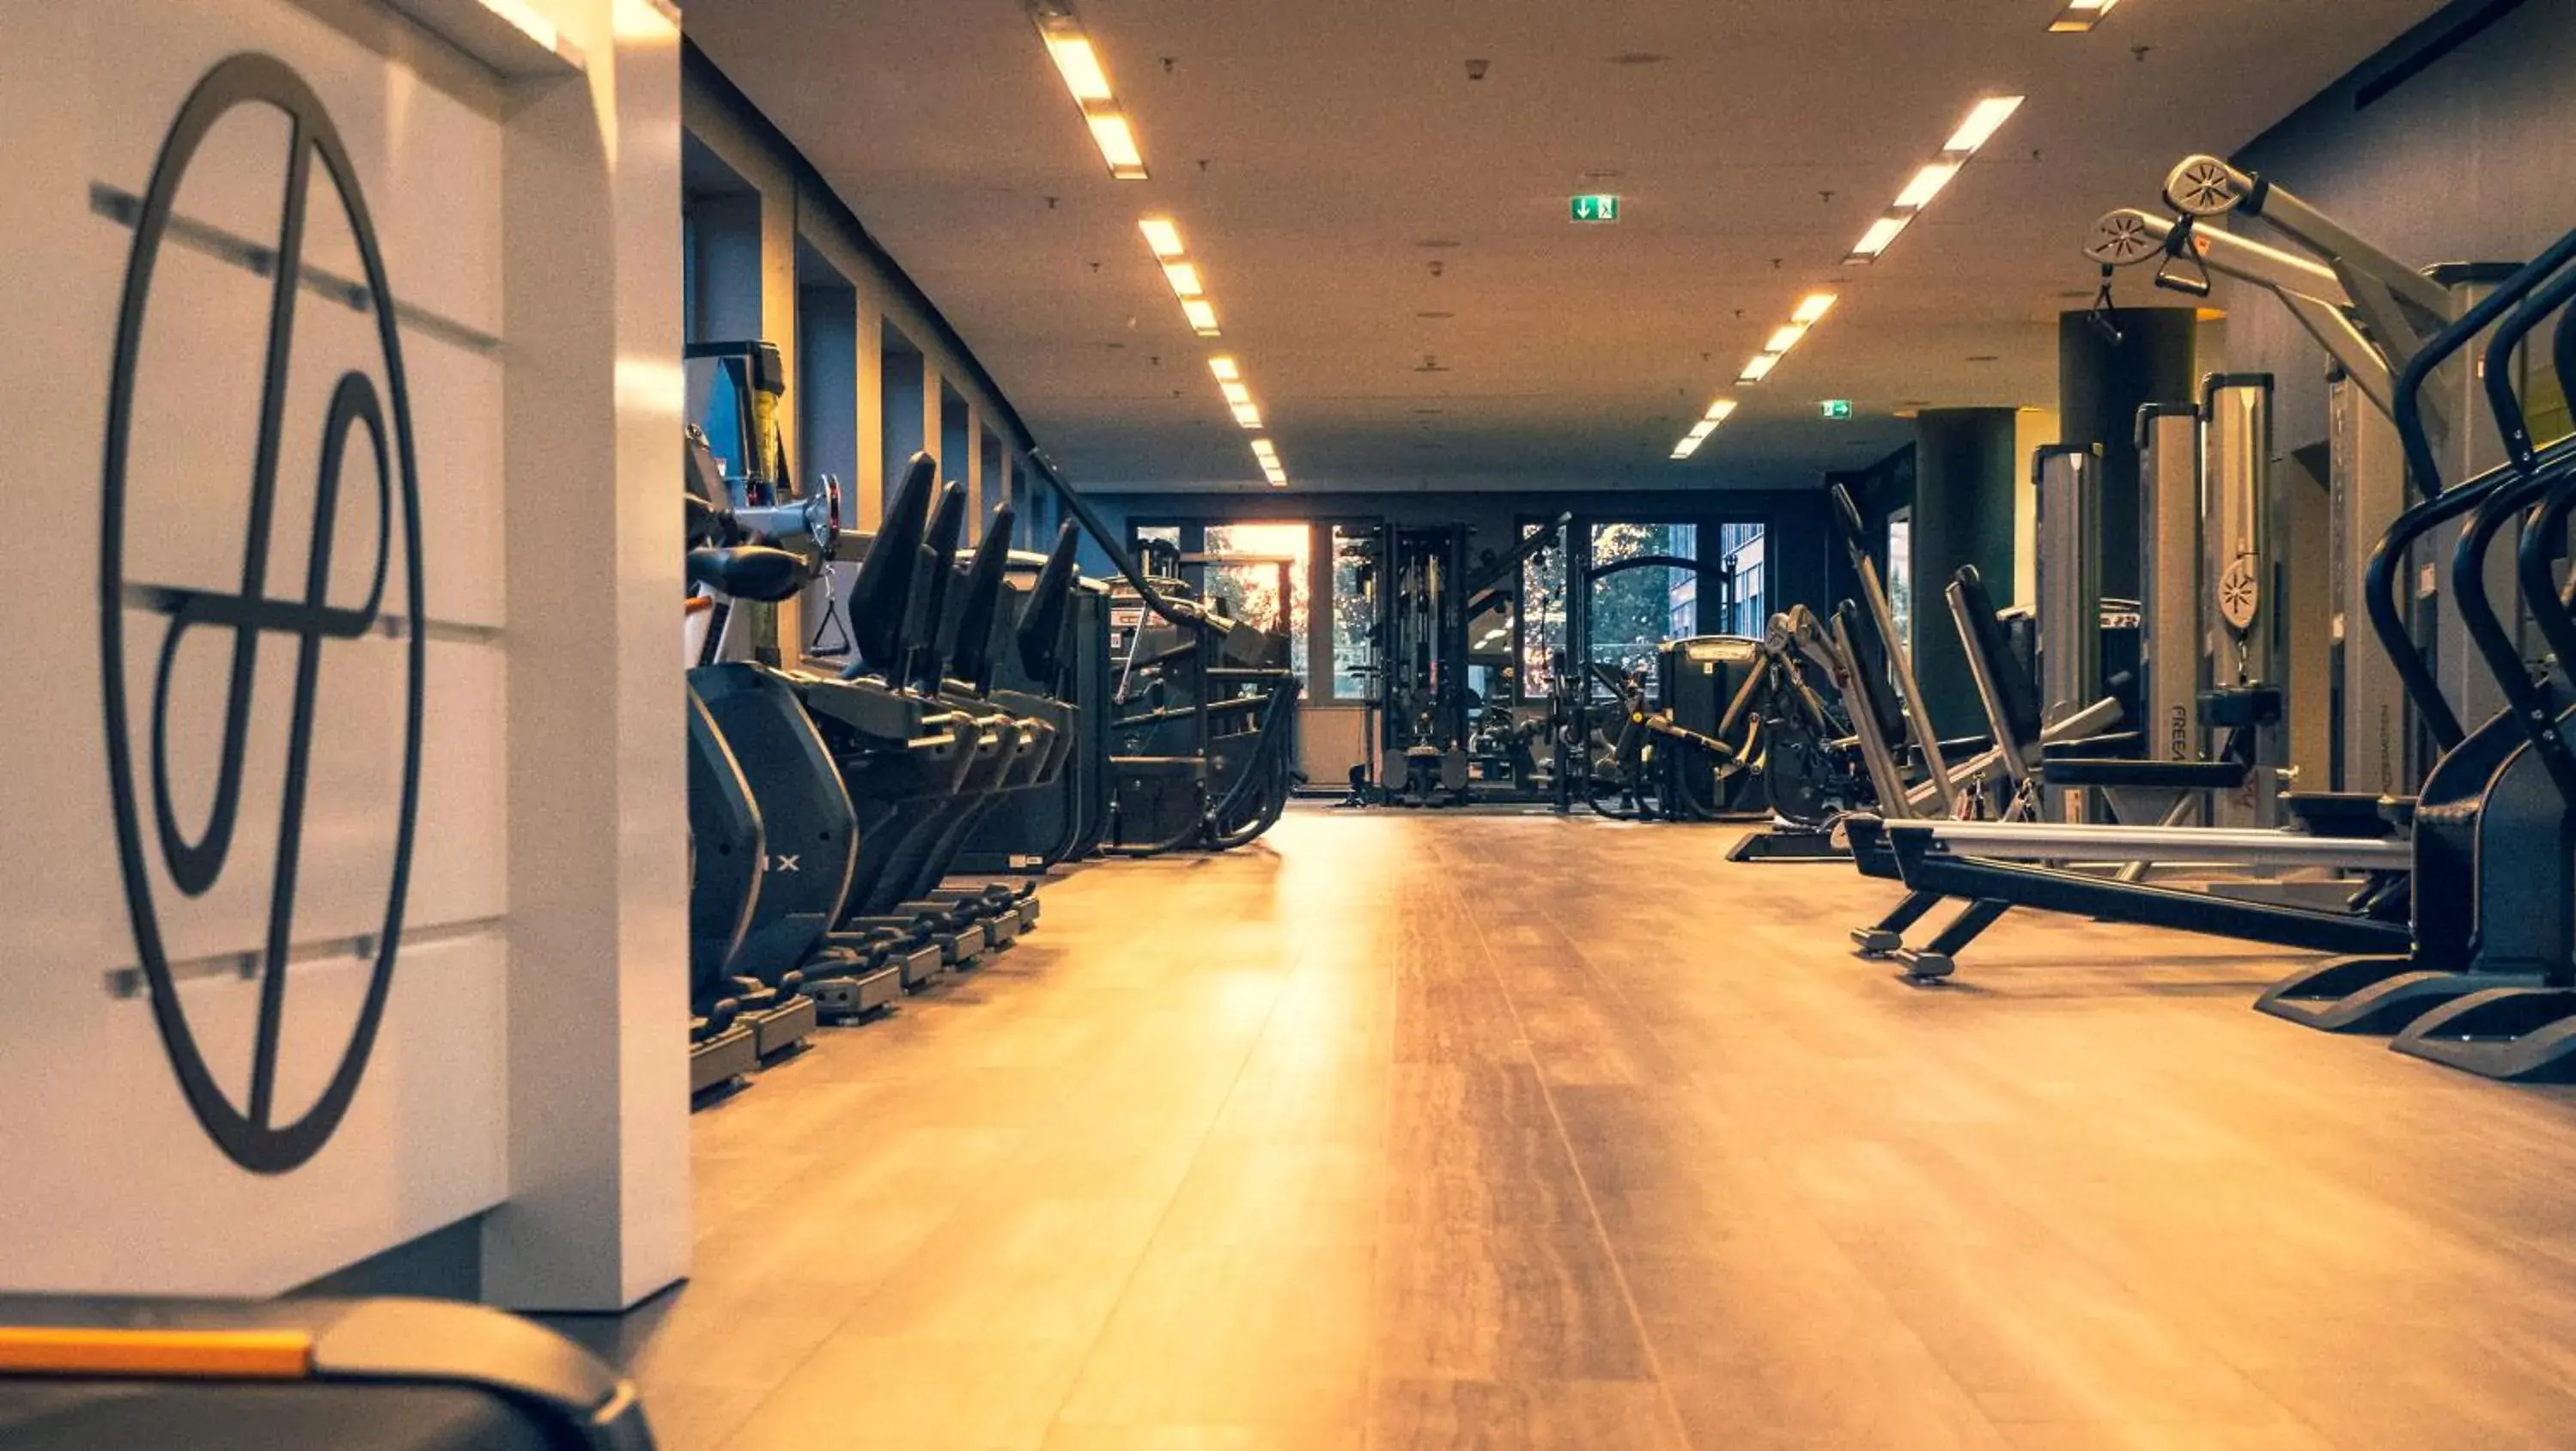 Fitness centre/facilities, Fitness Center/Facilities in Dorint Hotel am Heumarkt Köln